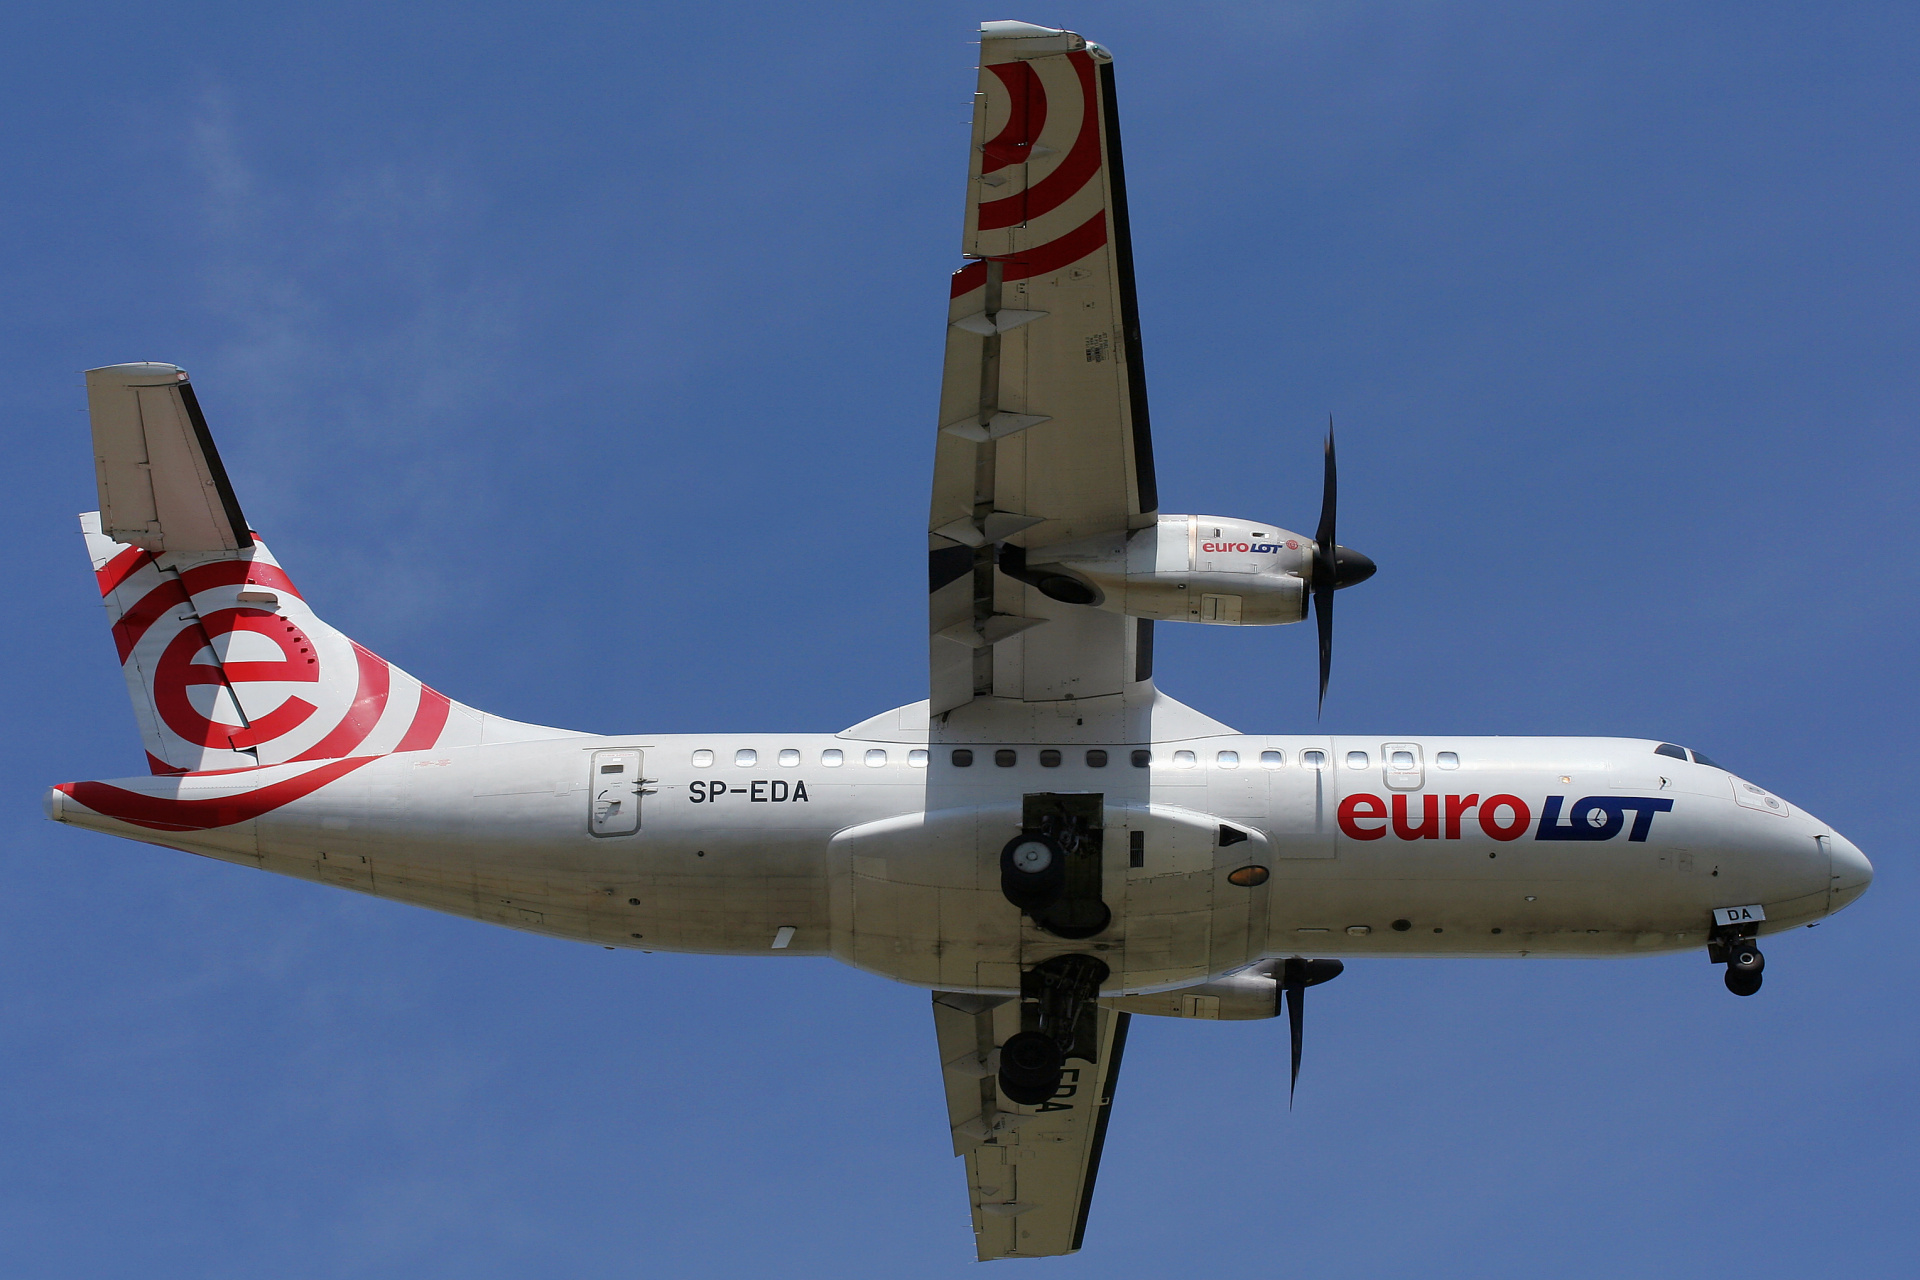 SP-EDA (Aircraft » EPWA Spotting » ATR 42 » EuroLOT)